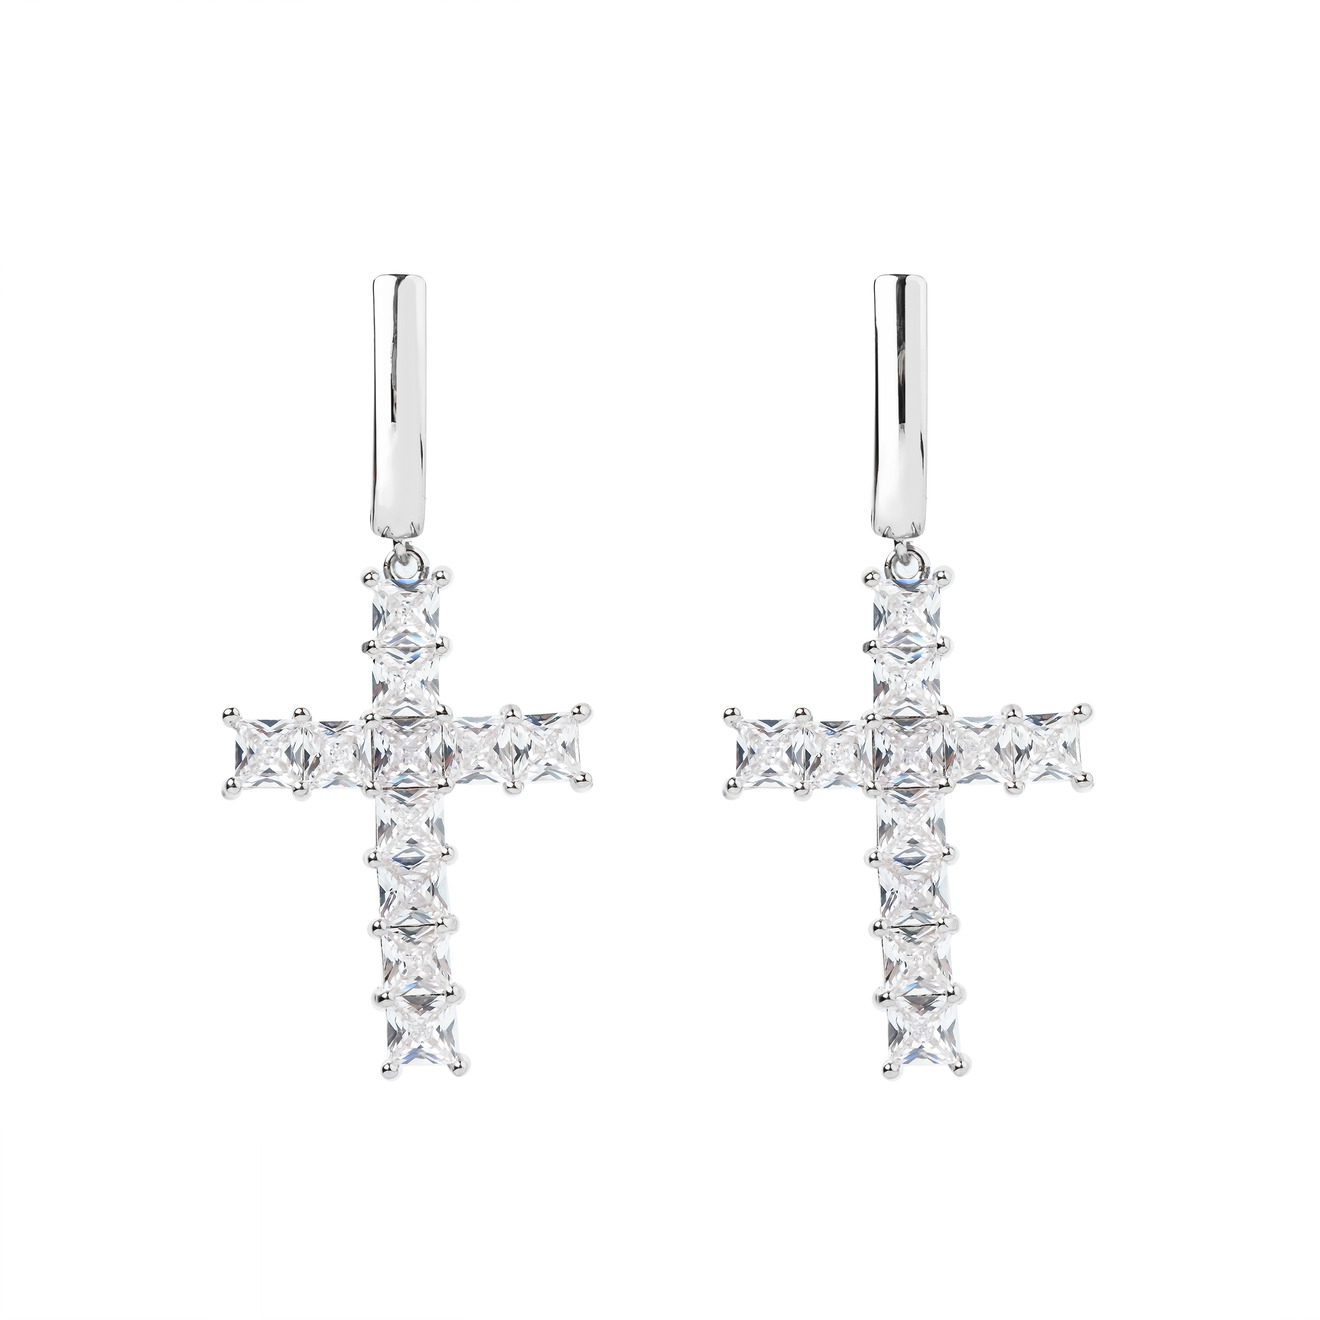 Herald Percy Серебристые серьги-кресты с кристаллами herald percy серебристые серьги звезды с кристаллами